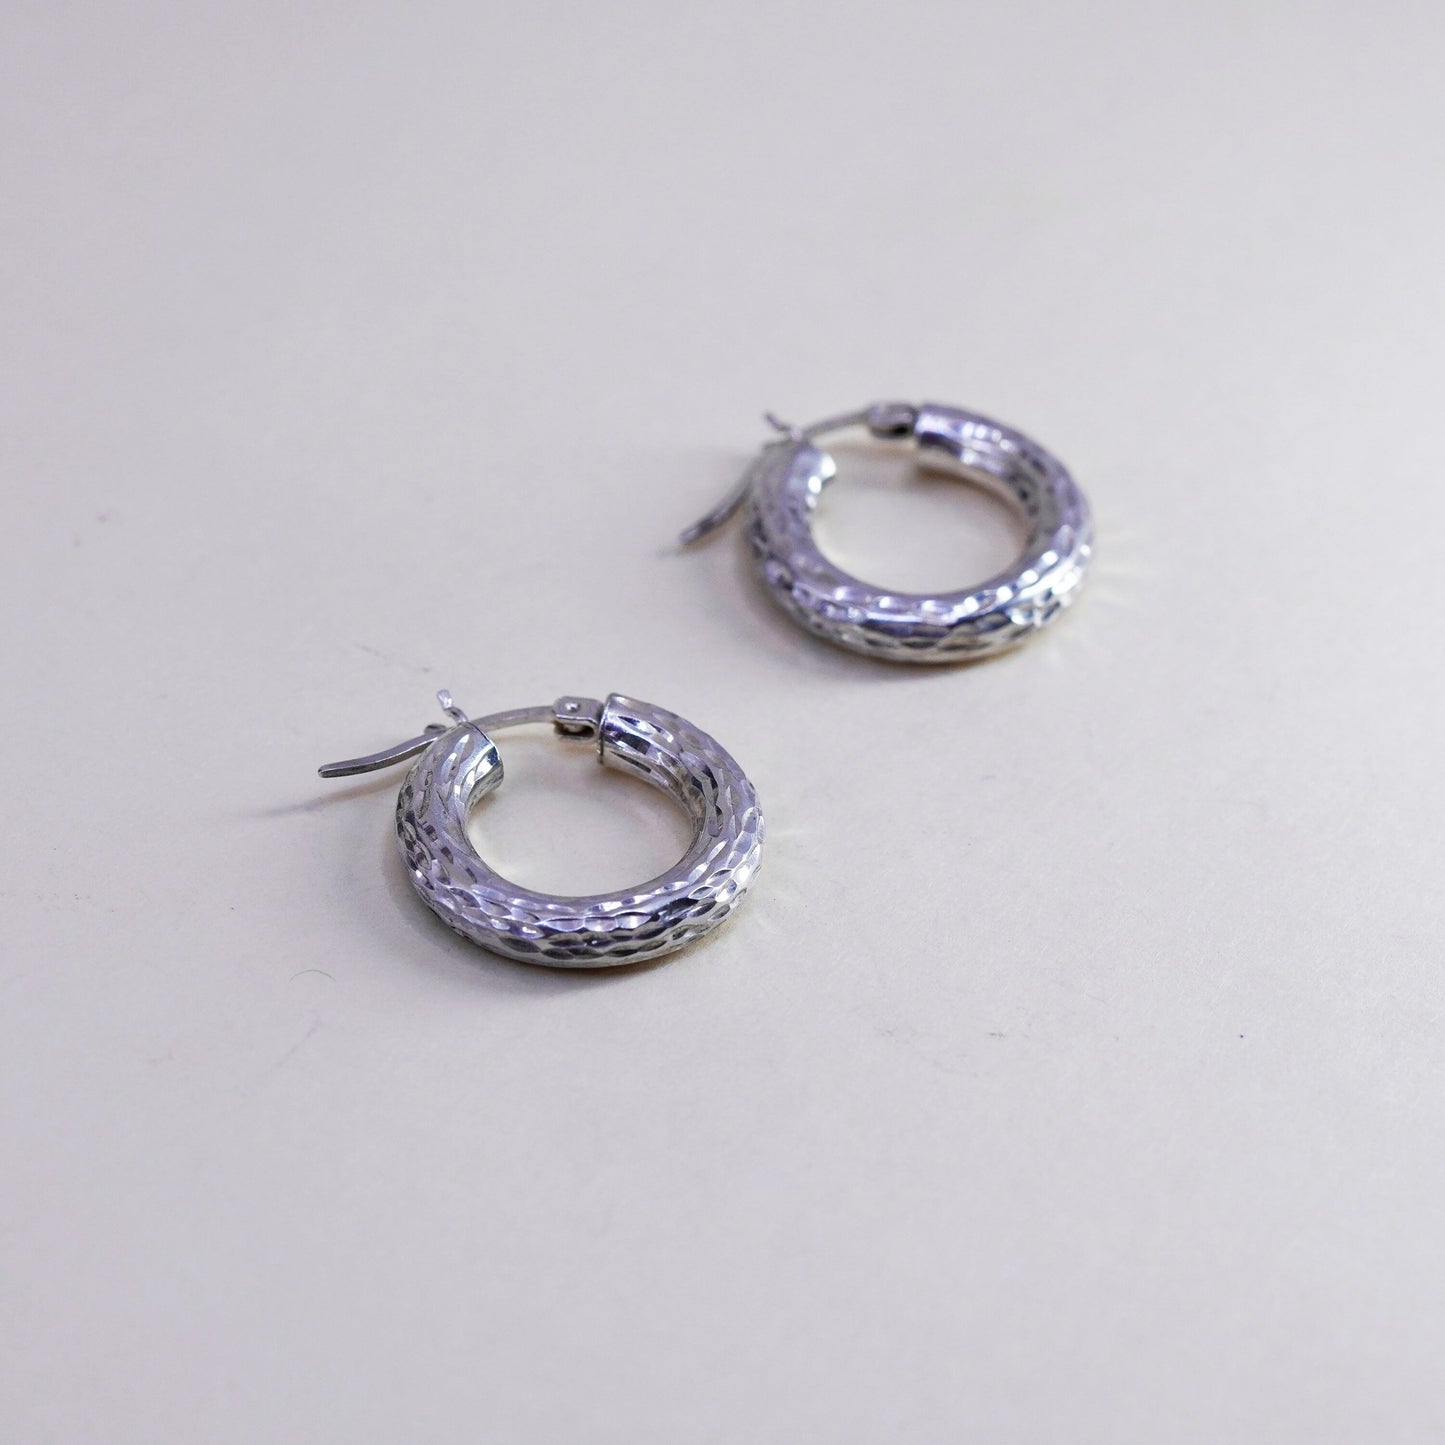 0.75”, Vintage sterling 925 silver loop earrings, textured hoops